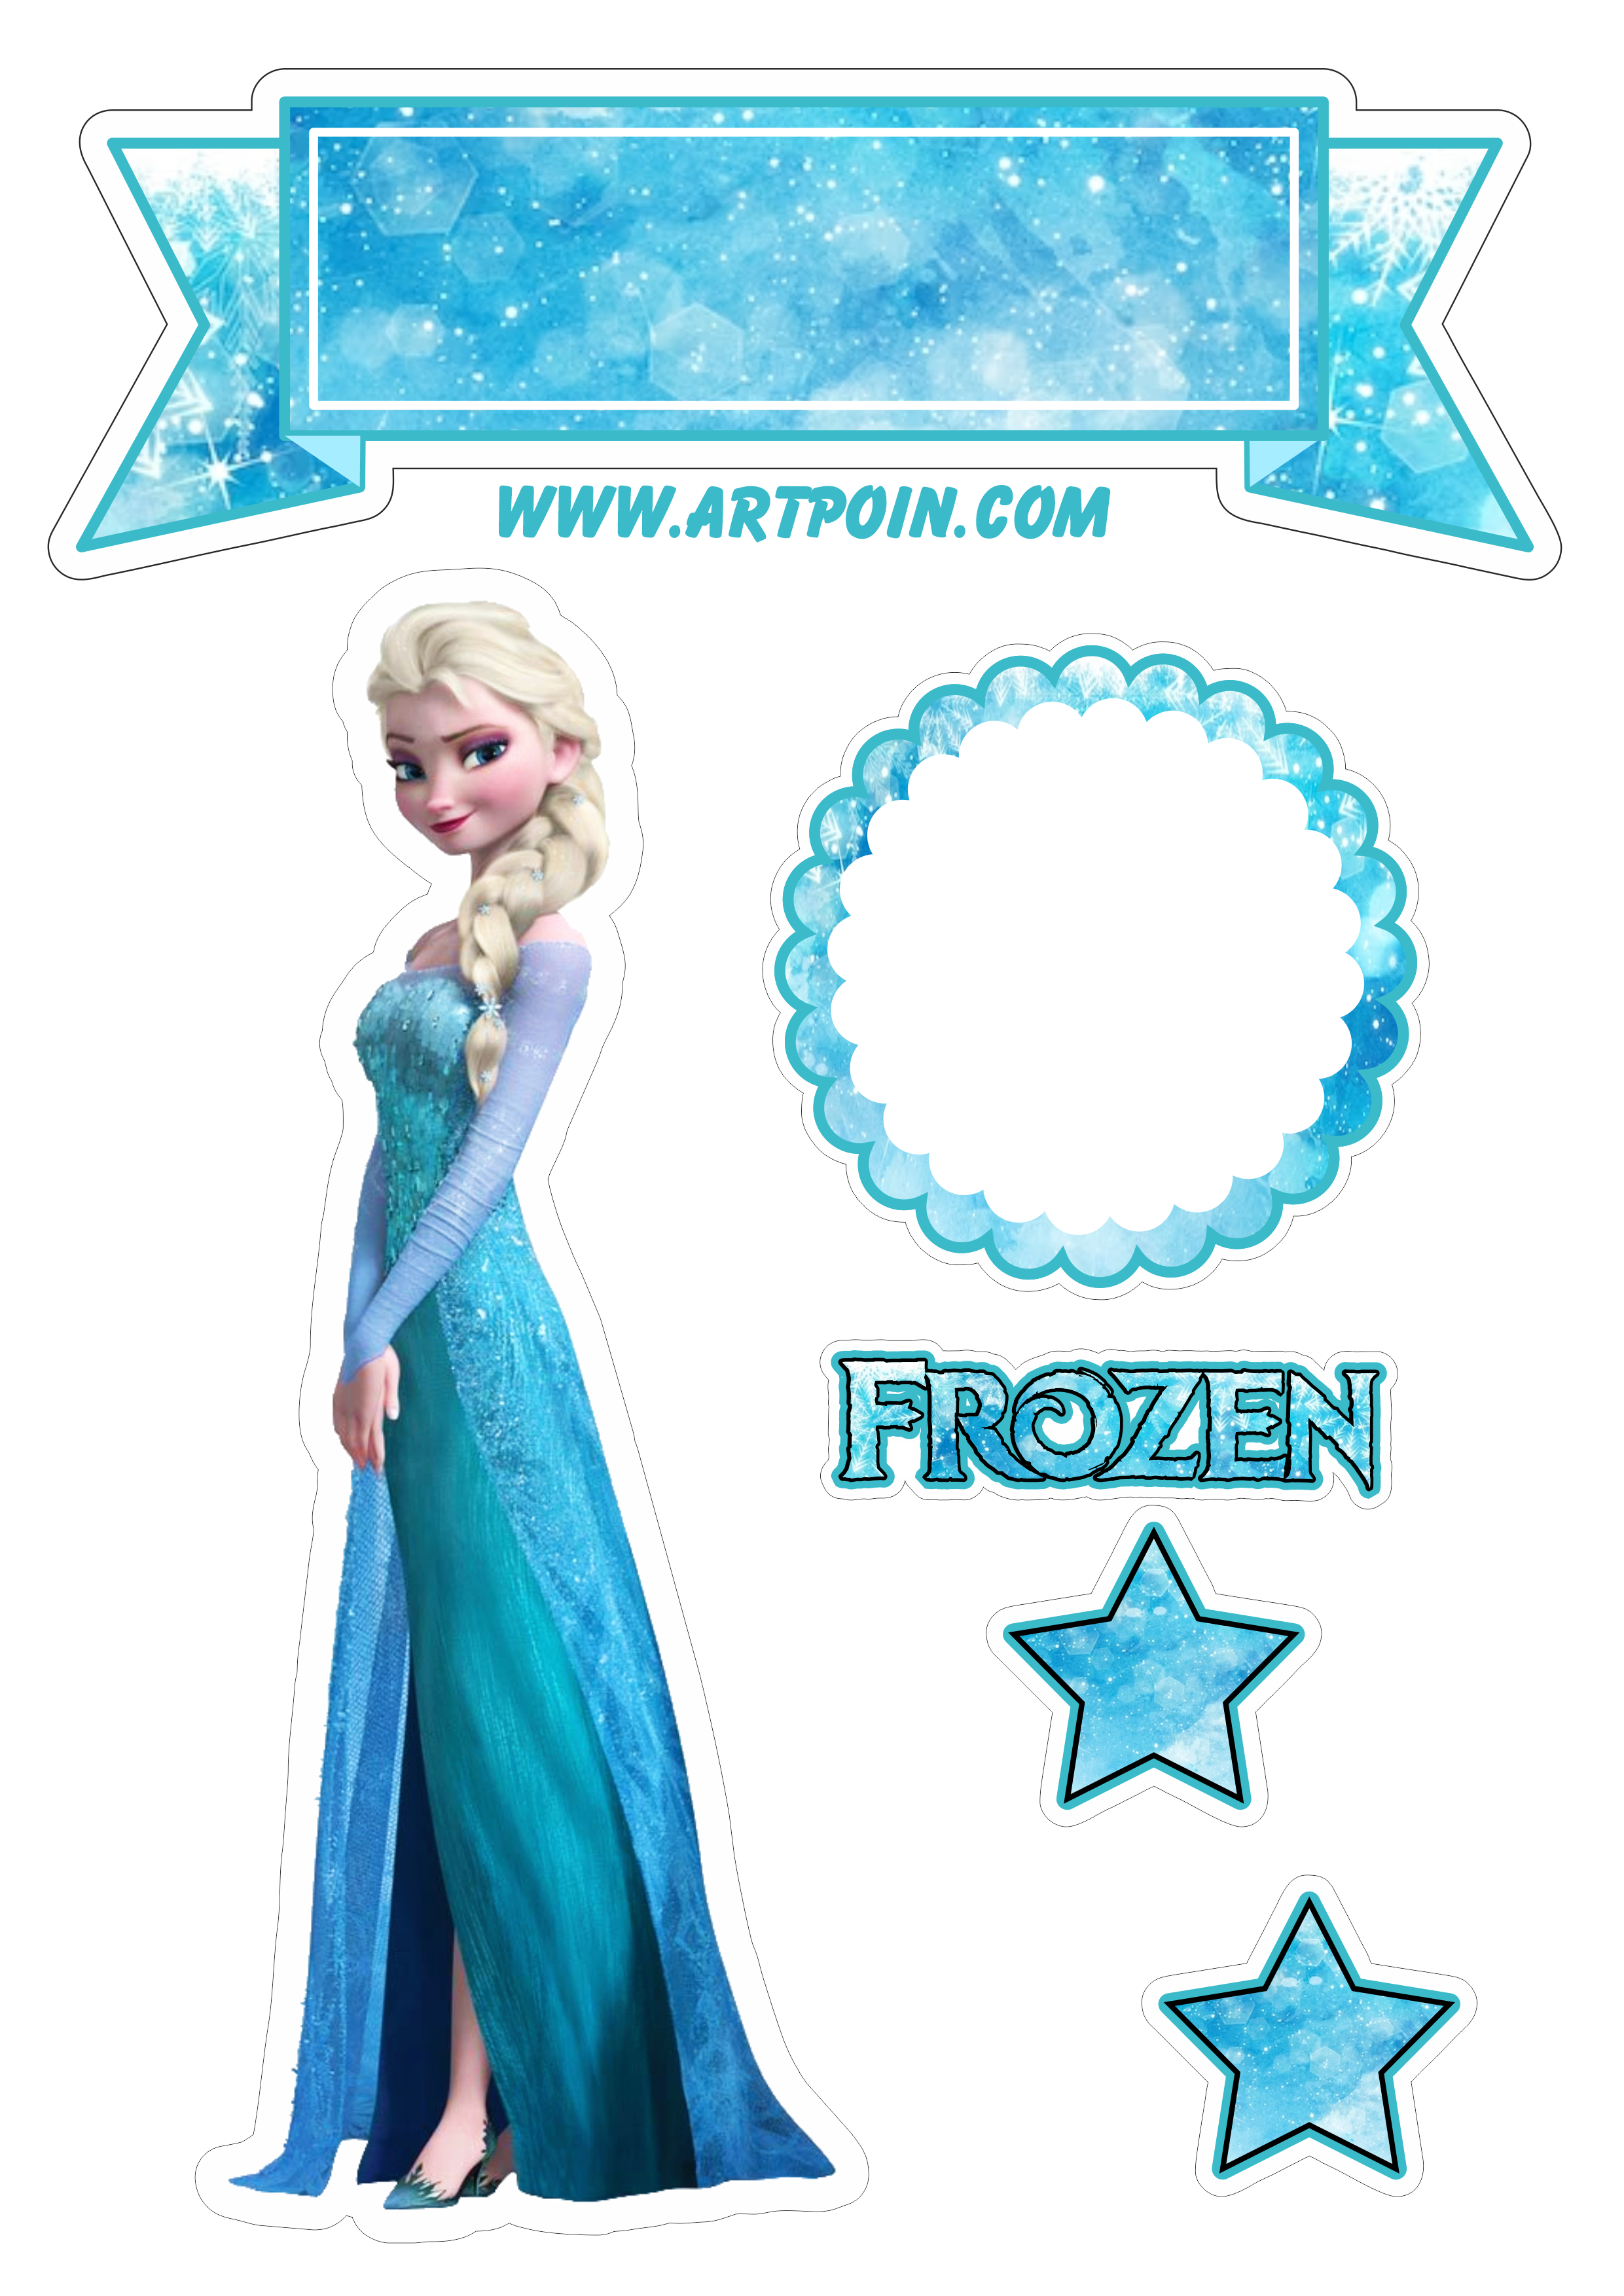 Topo de bolo para imprimir Frozen uma aventura congelante festa de aniversário temática menina infantil Elsa rainha do gelo estrelinhas png